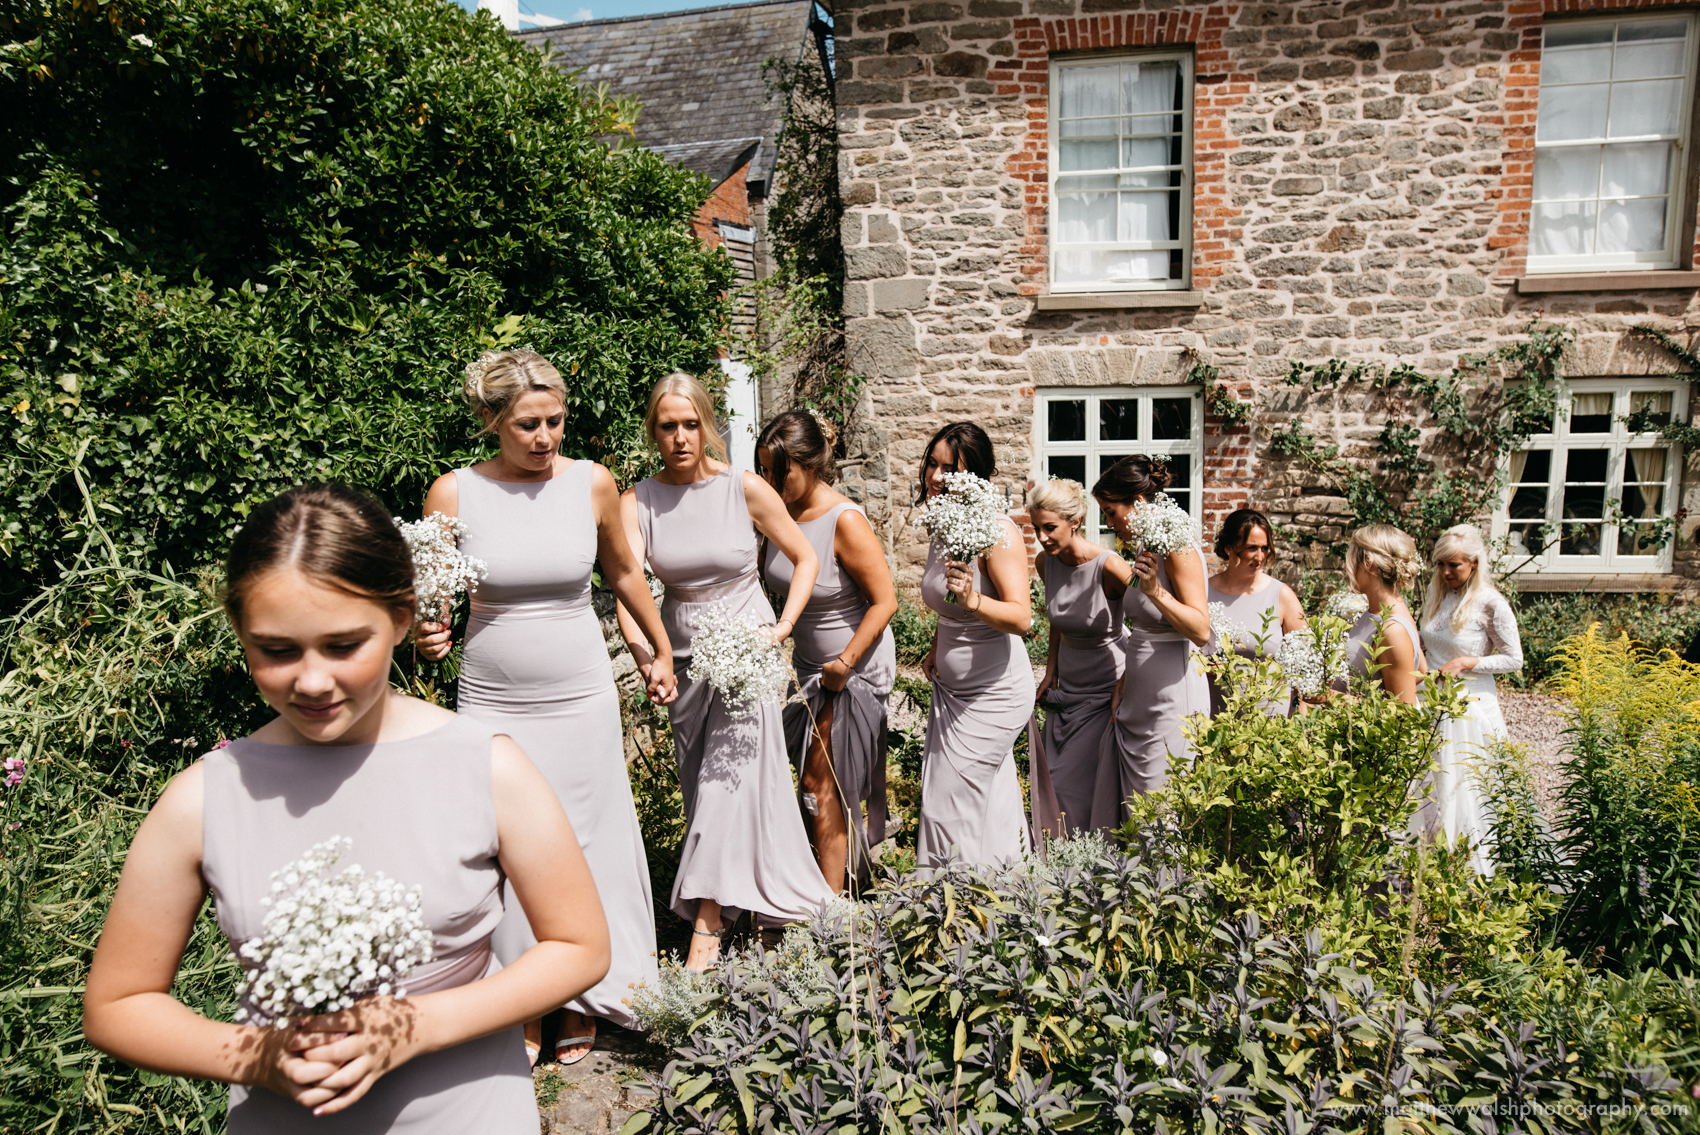 A long line of bridesmaids prepare to walk through the rose gardens